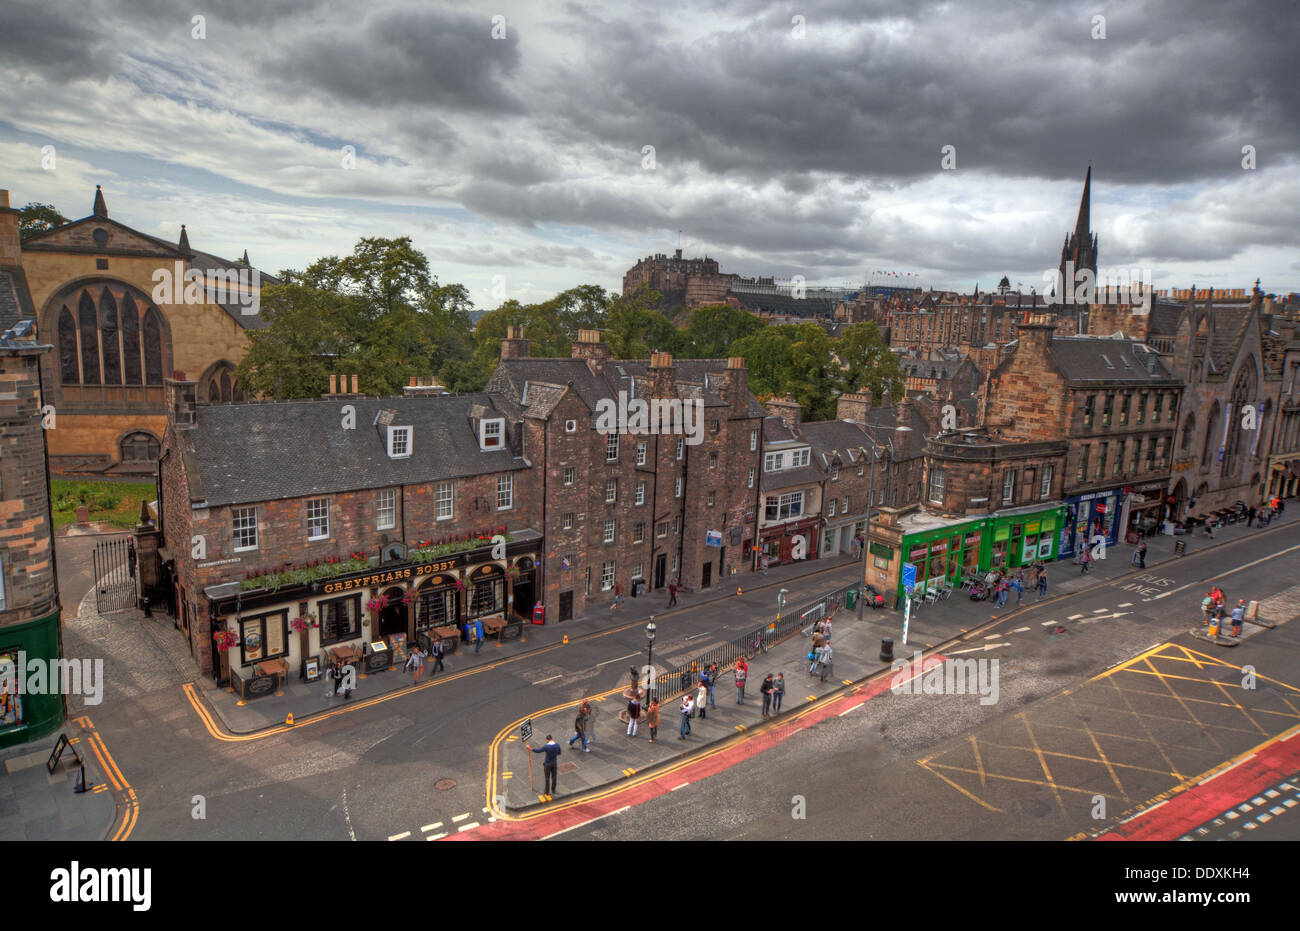 Edinburghs Grey Friars, Tolbooth, George Street und Candlemaker Row, Stadtzentrum, Lothians, Schottland, Großbritannien, Unter launischem Himmel Stockfoto